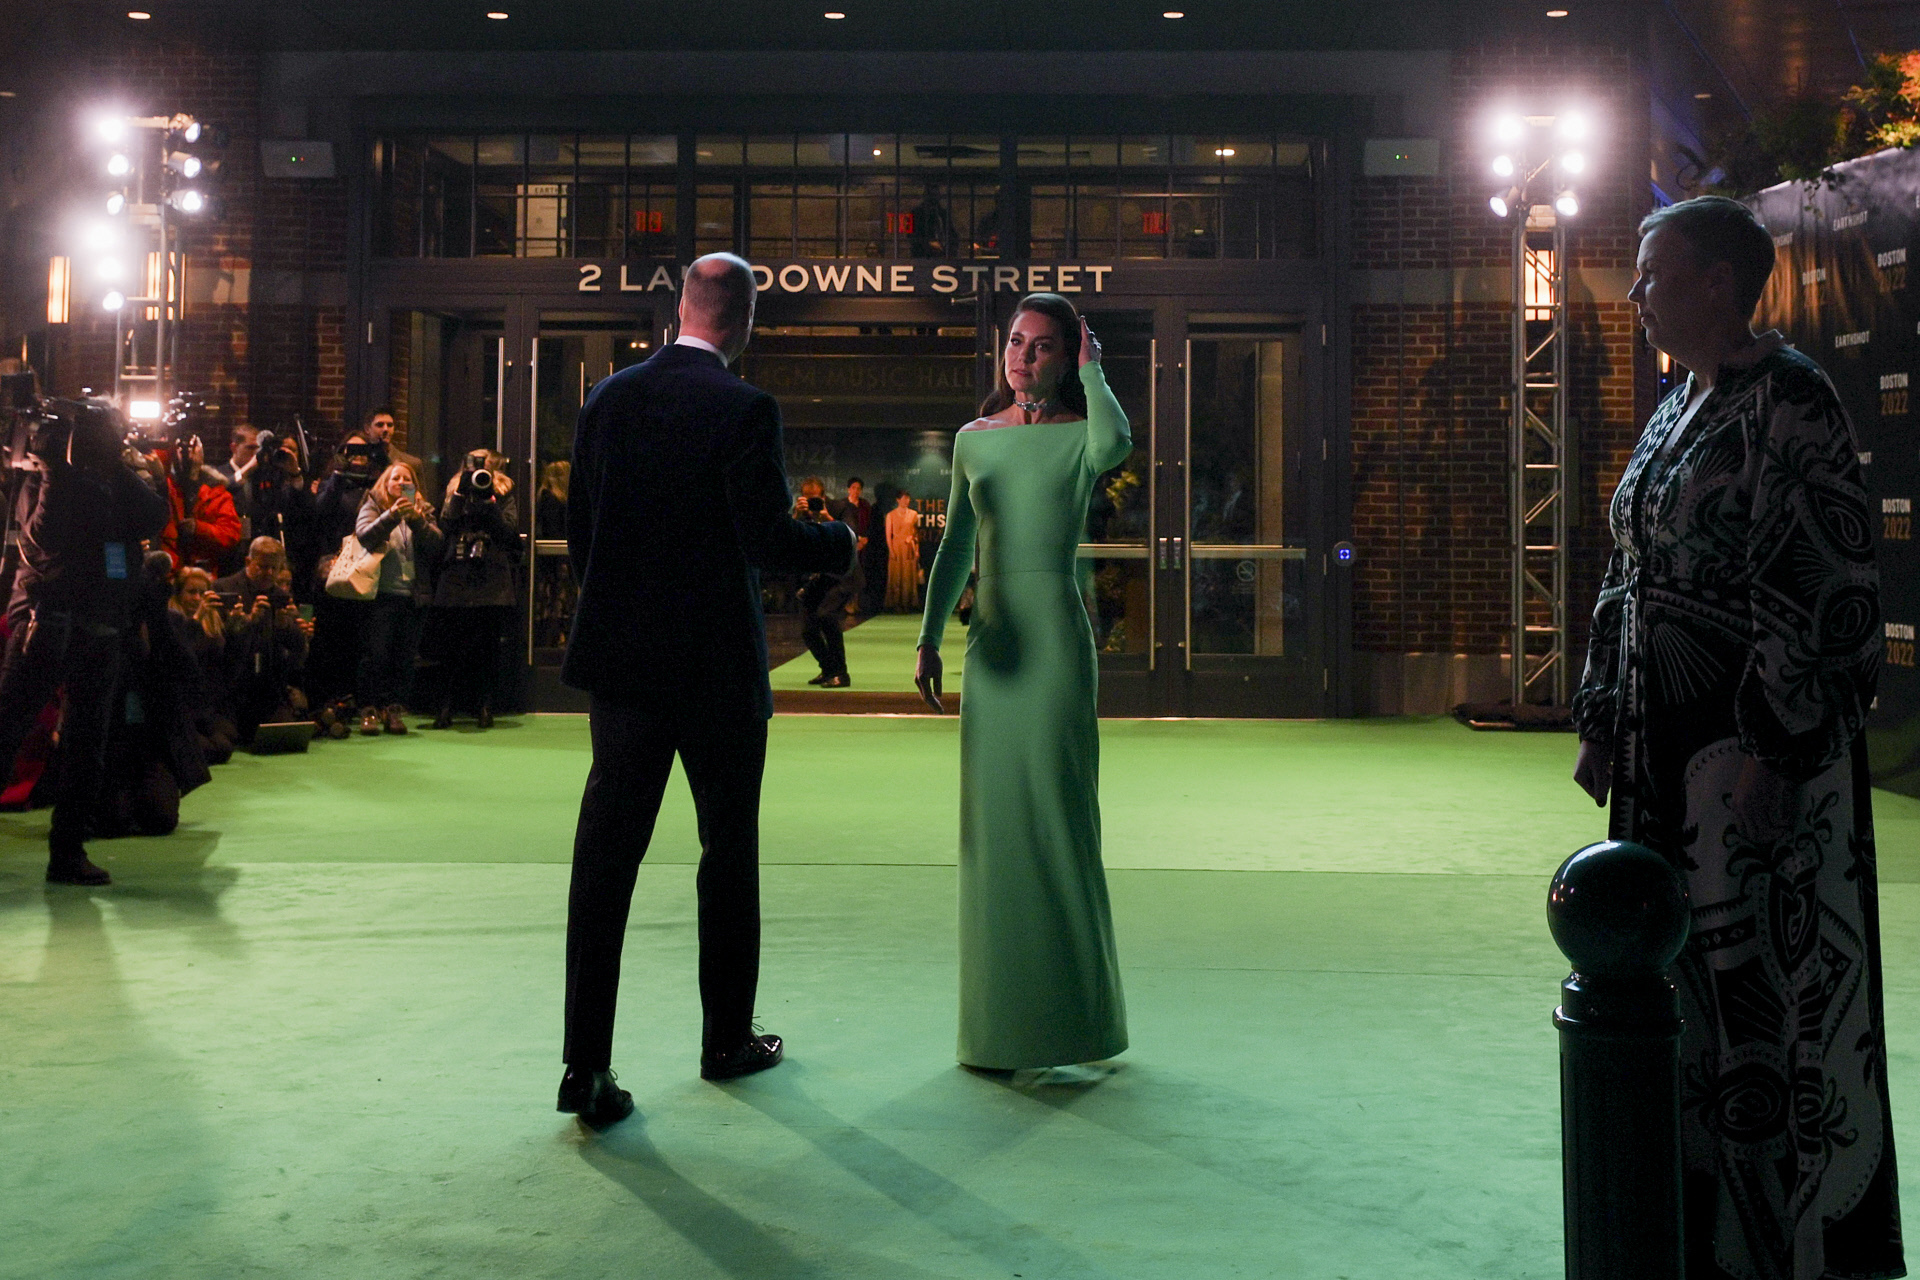 El vestido verde que dejaba los hombros al descubierto se define en la web de la marca como "body-conscious".